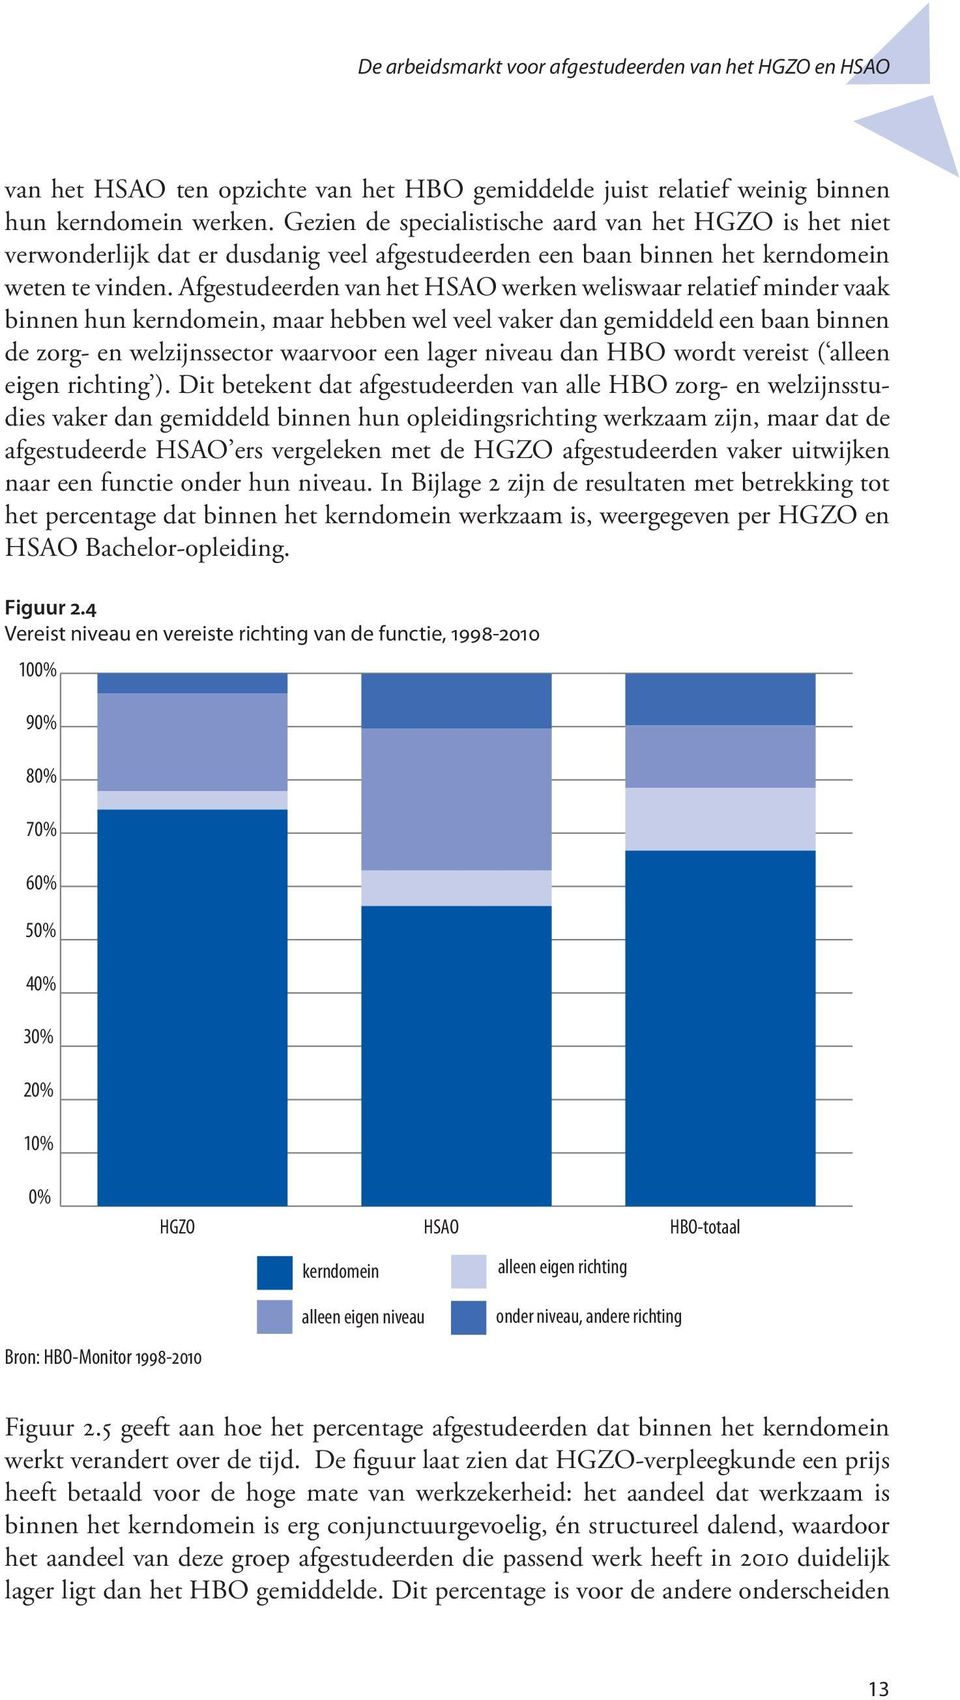 Afgestudeerden van het HSAO werken weliswaar relatief minder vaak binnen hun kerndomein, maar hebben wel veel vaker dan gemiddeld een baan binnen de zorg- en welzijnssector waarvoor een lager niveau